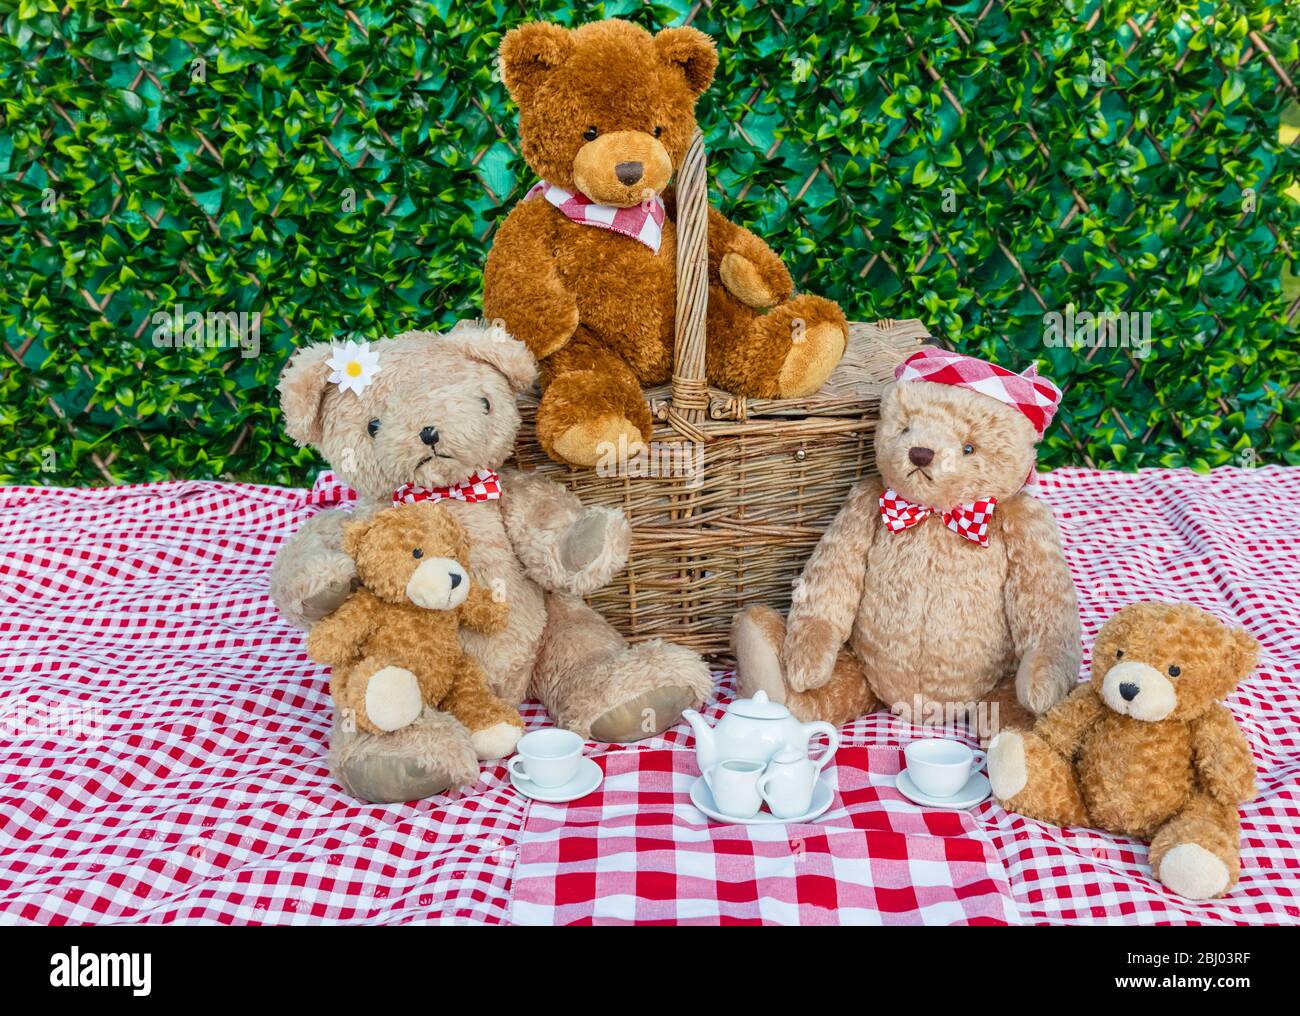 Picnic di Teddy Bear. Cinque orsacchiotti che si godono un pic-nic nel giardino con il panno da tavolo rosso e bianco di gingham e teacups bianco cina. Concetto: Felice Foto Stock